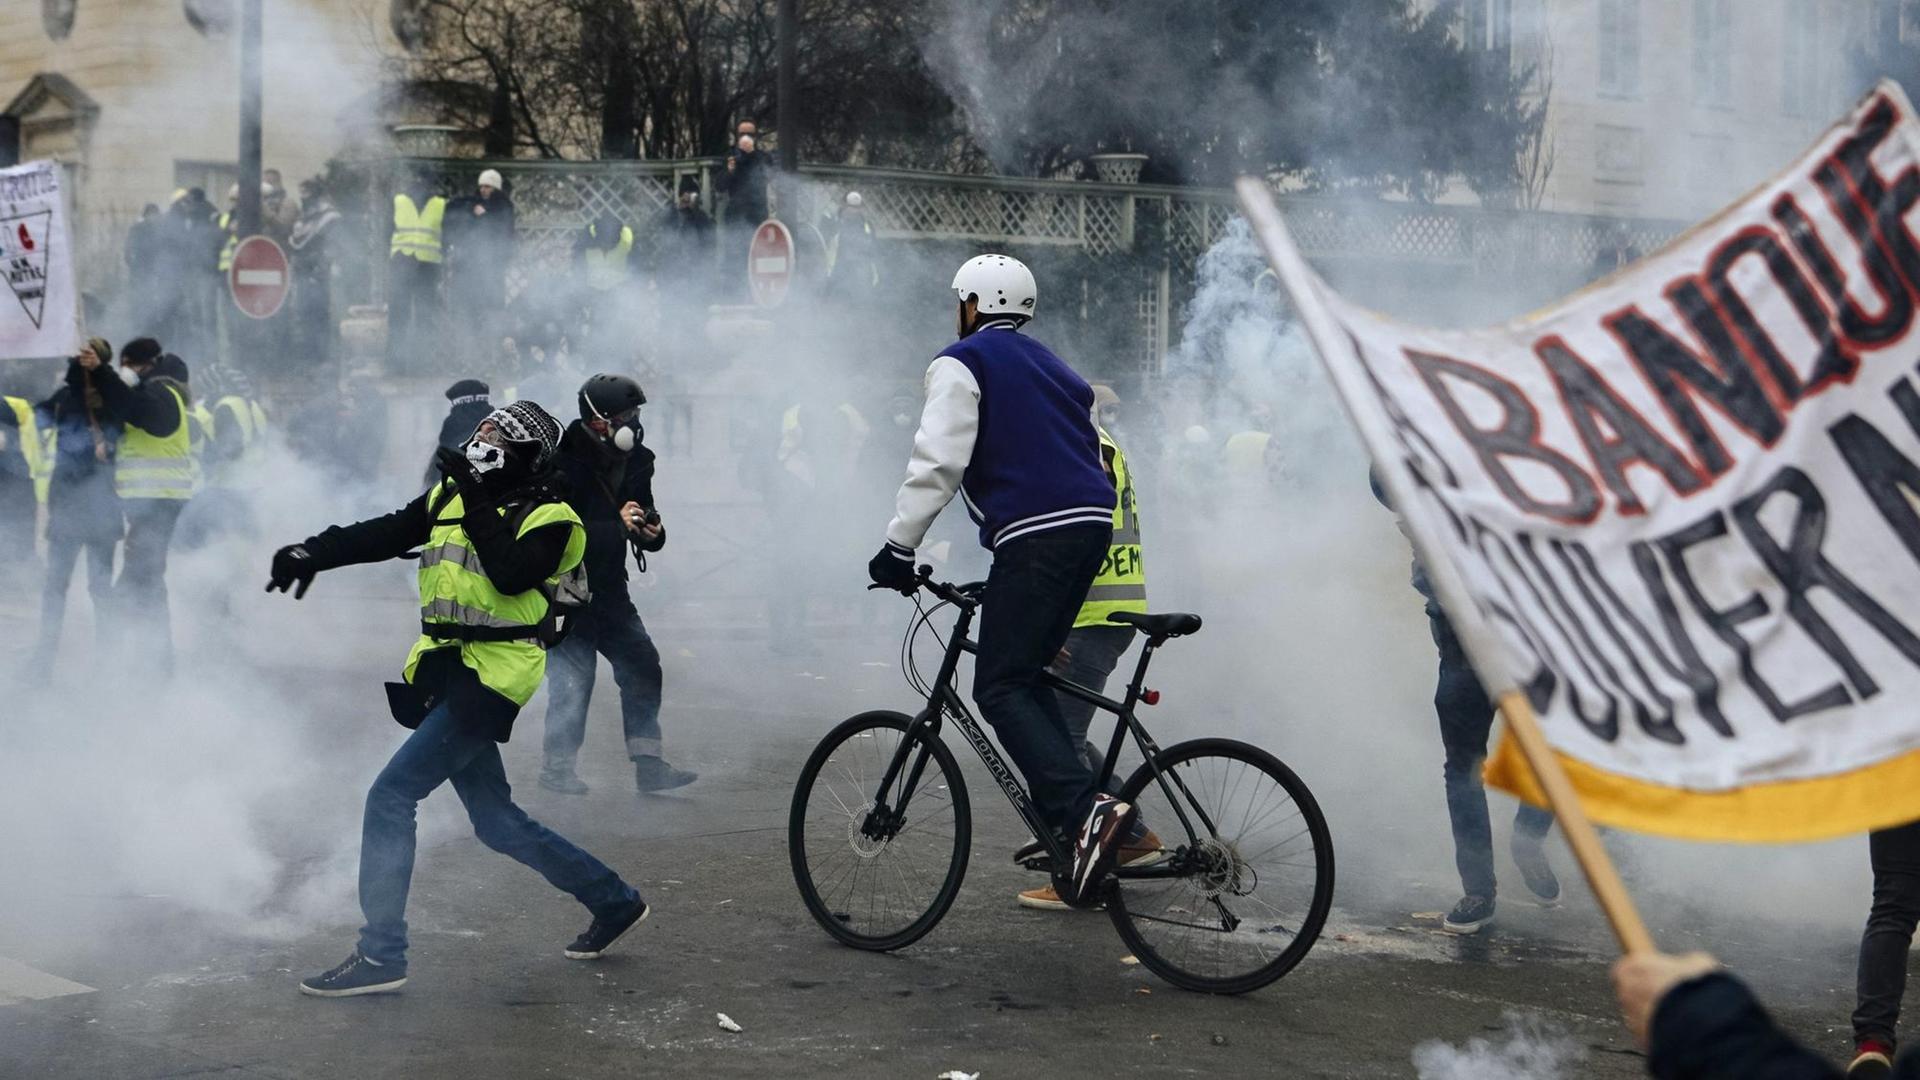 Demonstranten in Paris stehen in einer Wolke von Tränengas, das von Polizisten während eines "Gelbwesten"-Protests eingesetzt wurde.